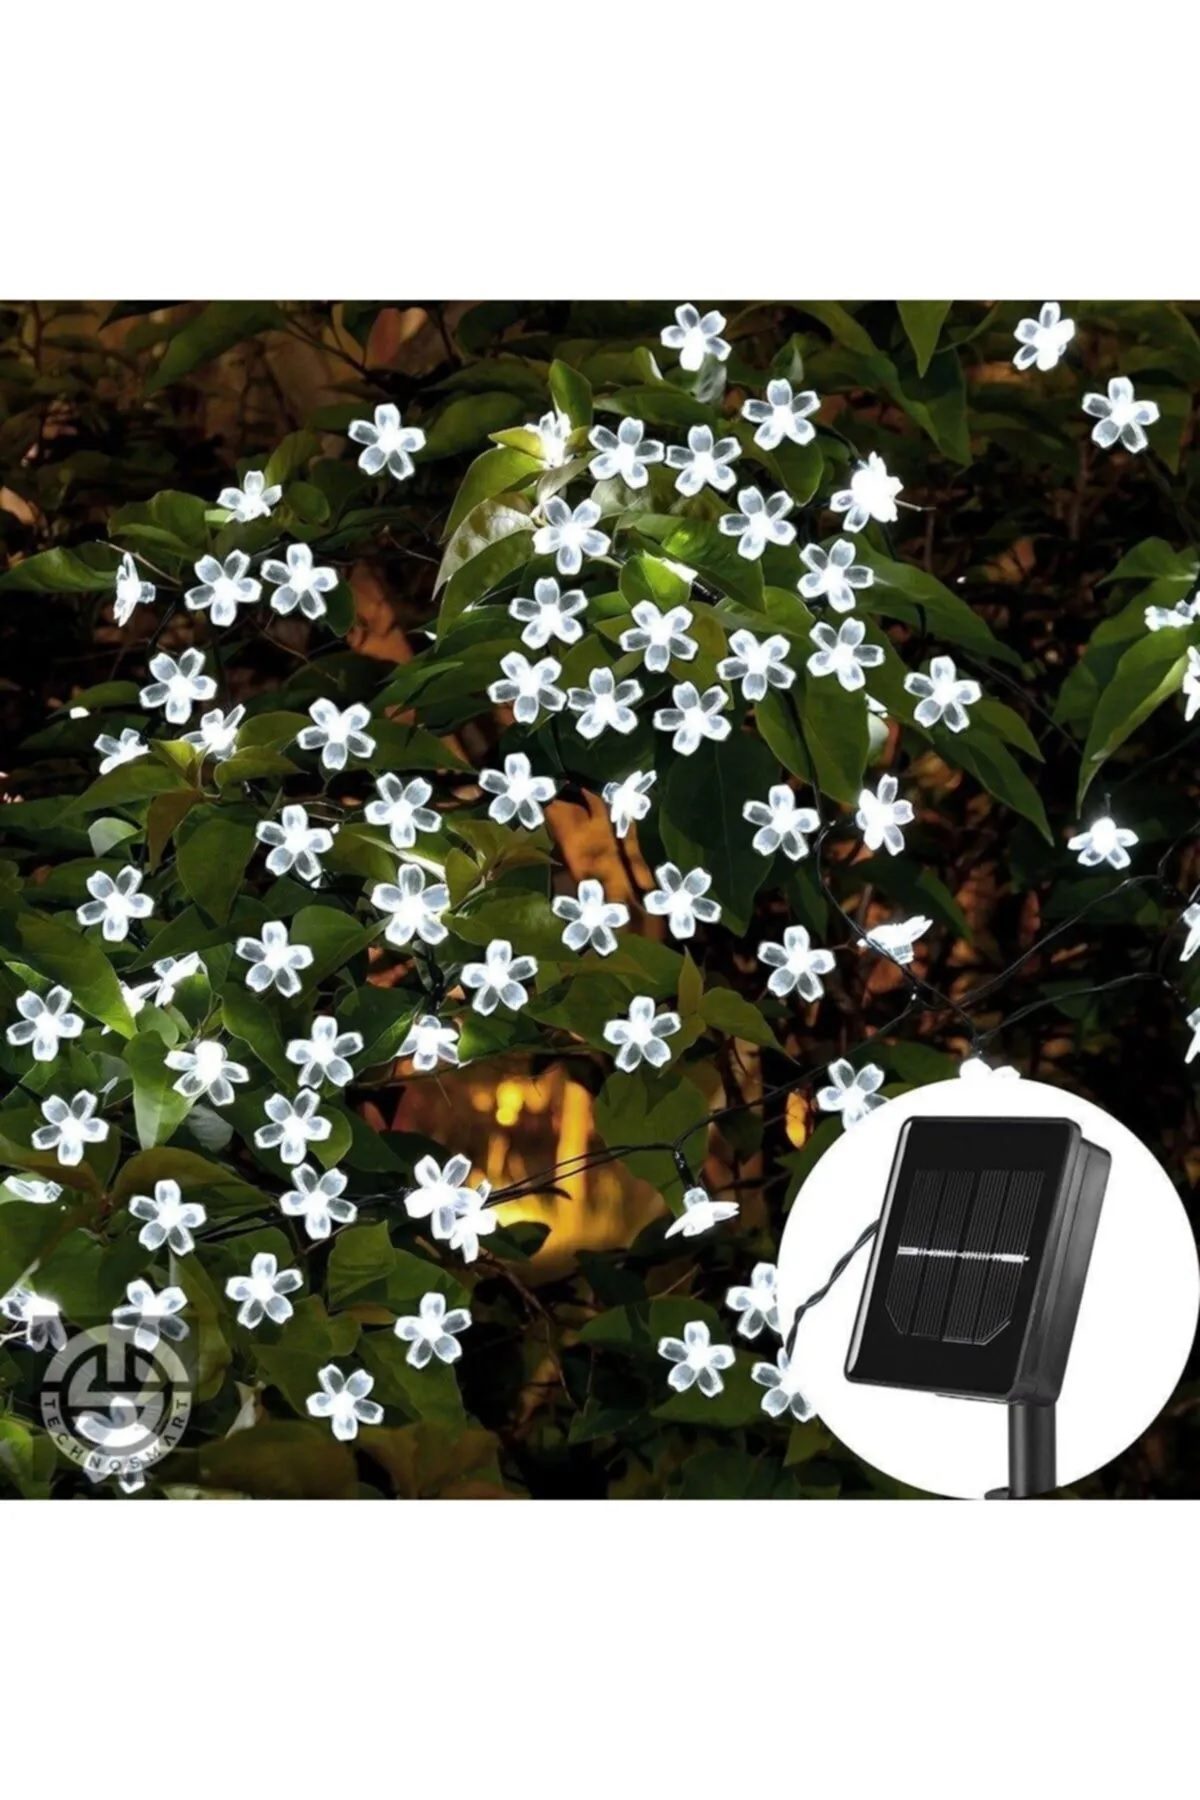 CLZ192 Solar 50 Ledli Çiçekli Beyaz Led Bahçe Aydınlatma Dekorasyon Güneş Enerjili